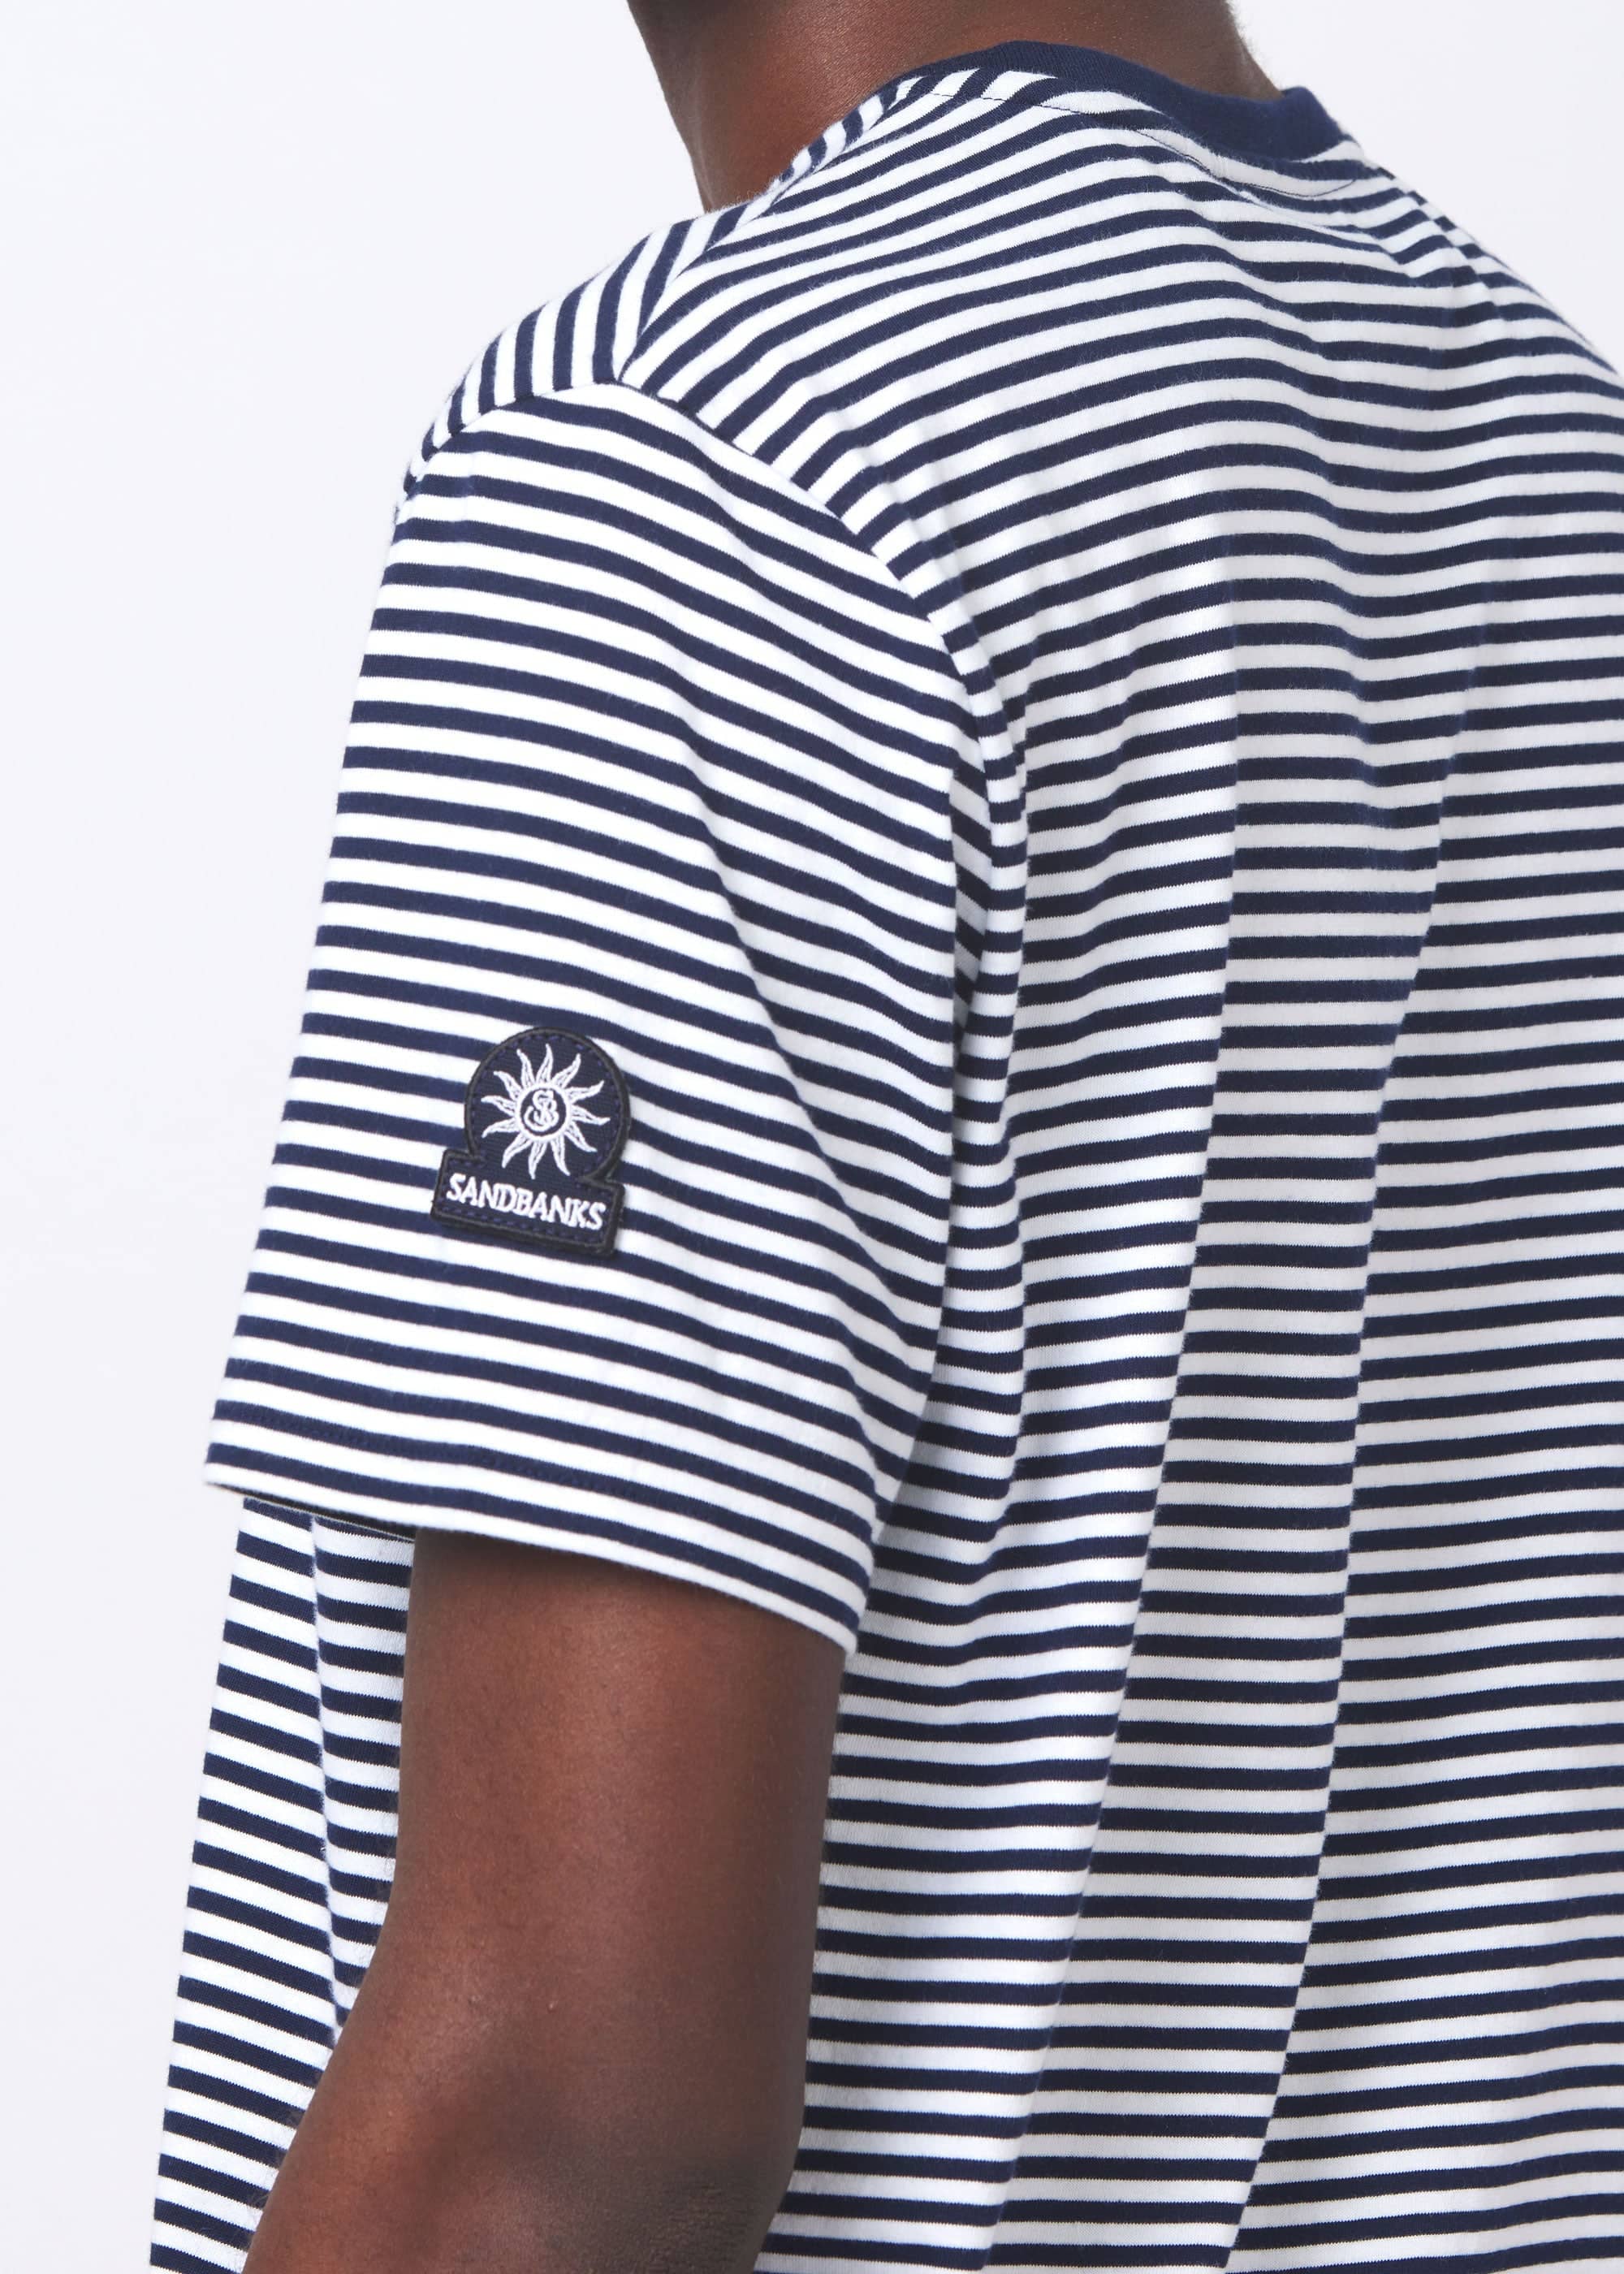 Sandbanks Badge Logo Stripe T-Shirt - Navy/White - Sandbanks